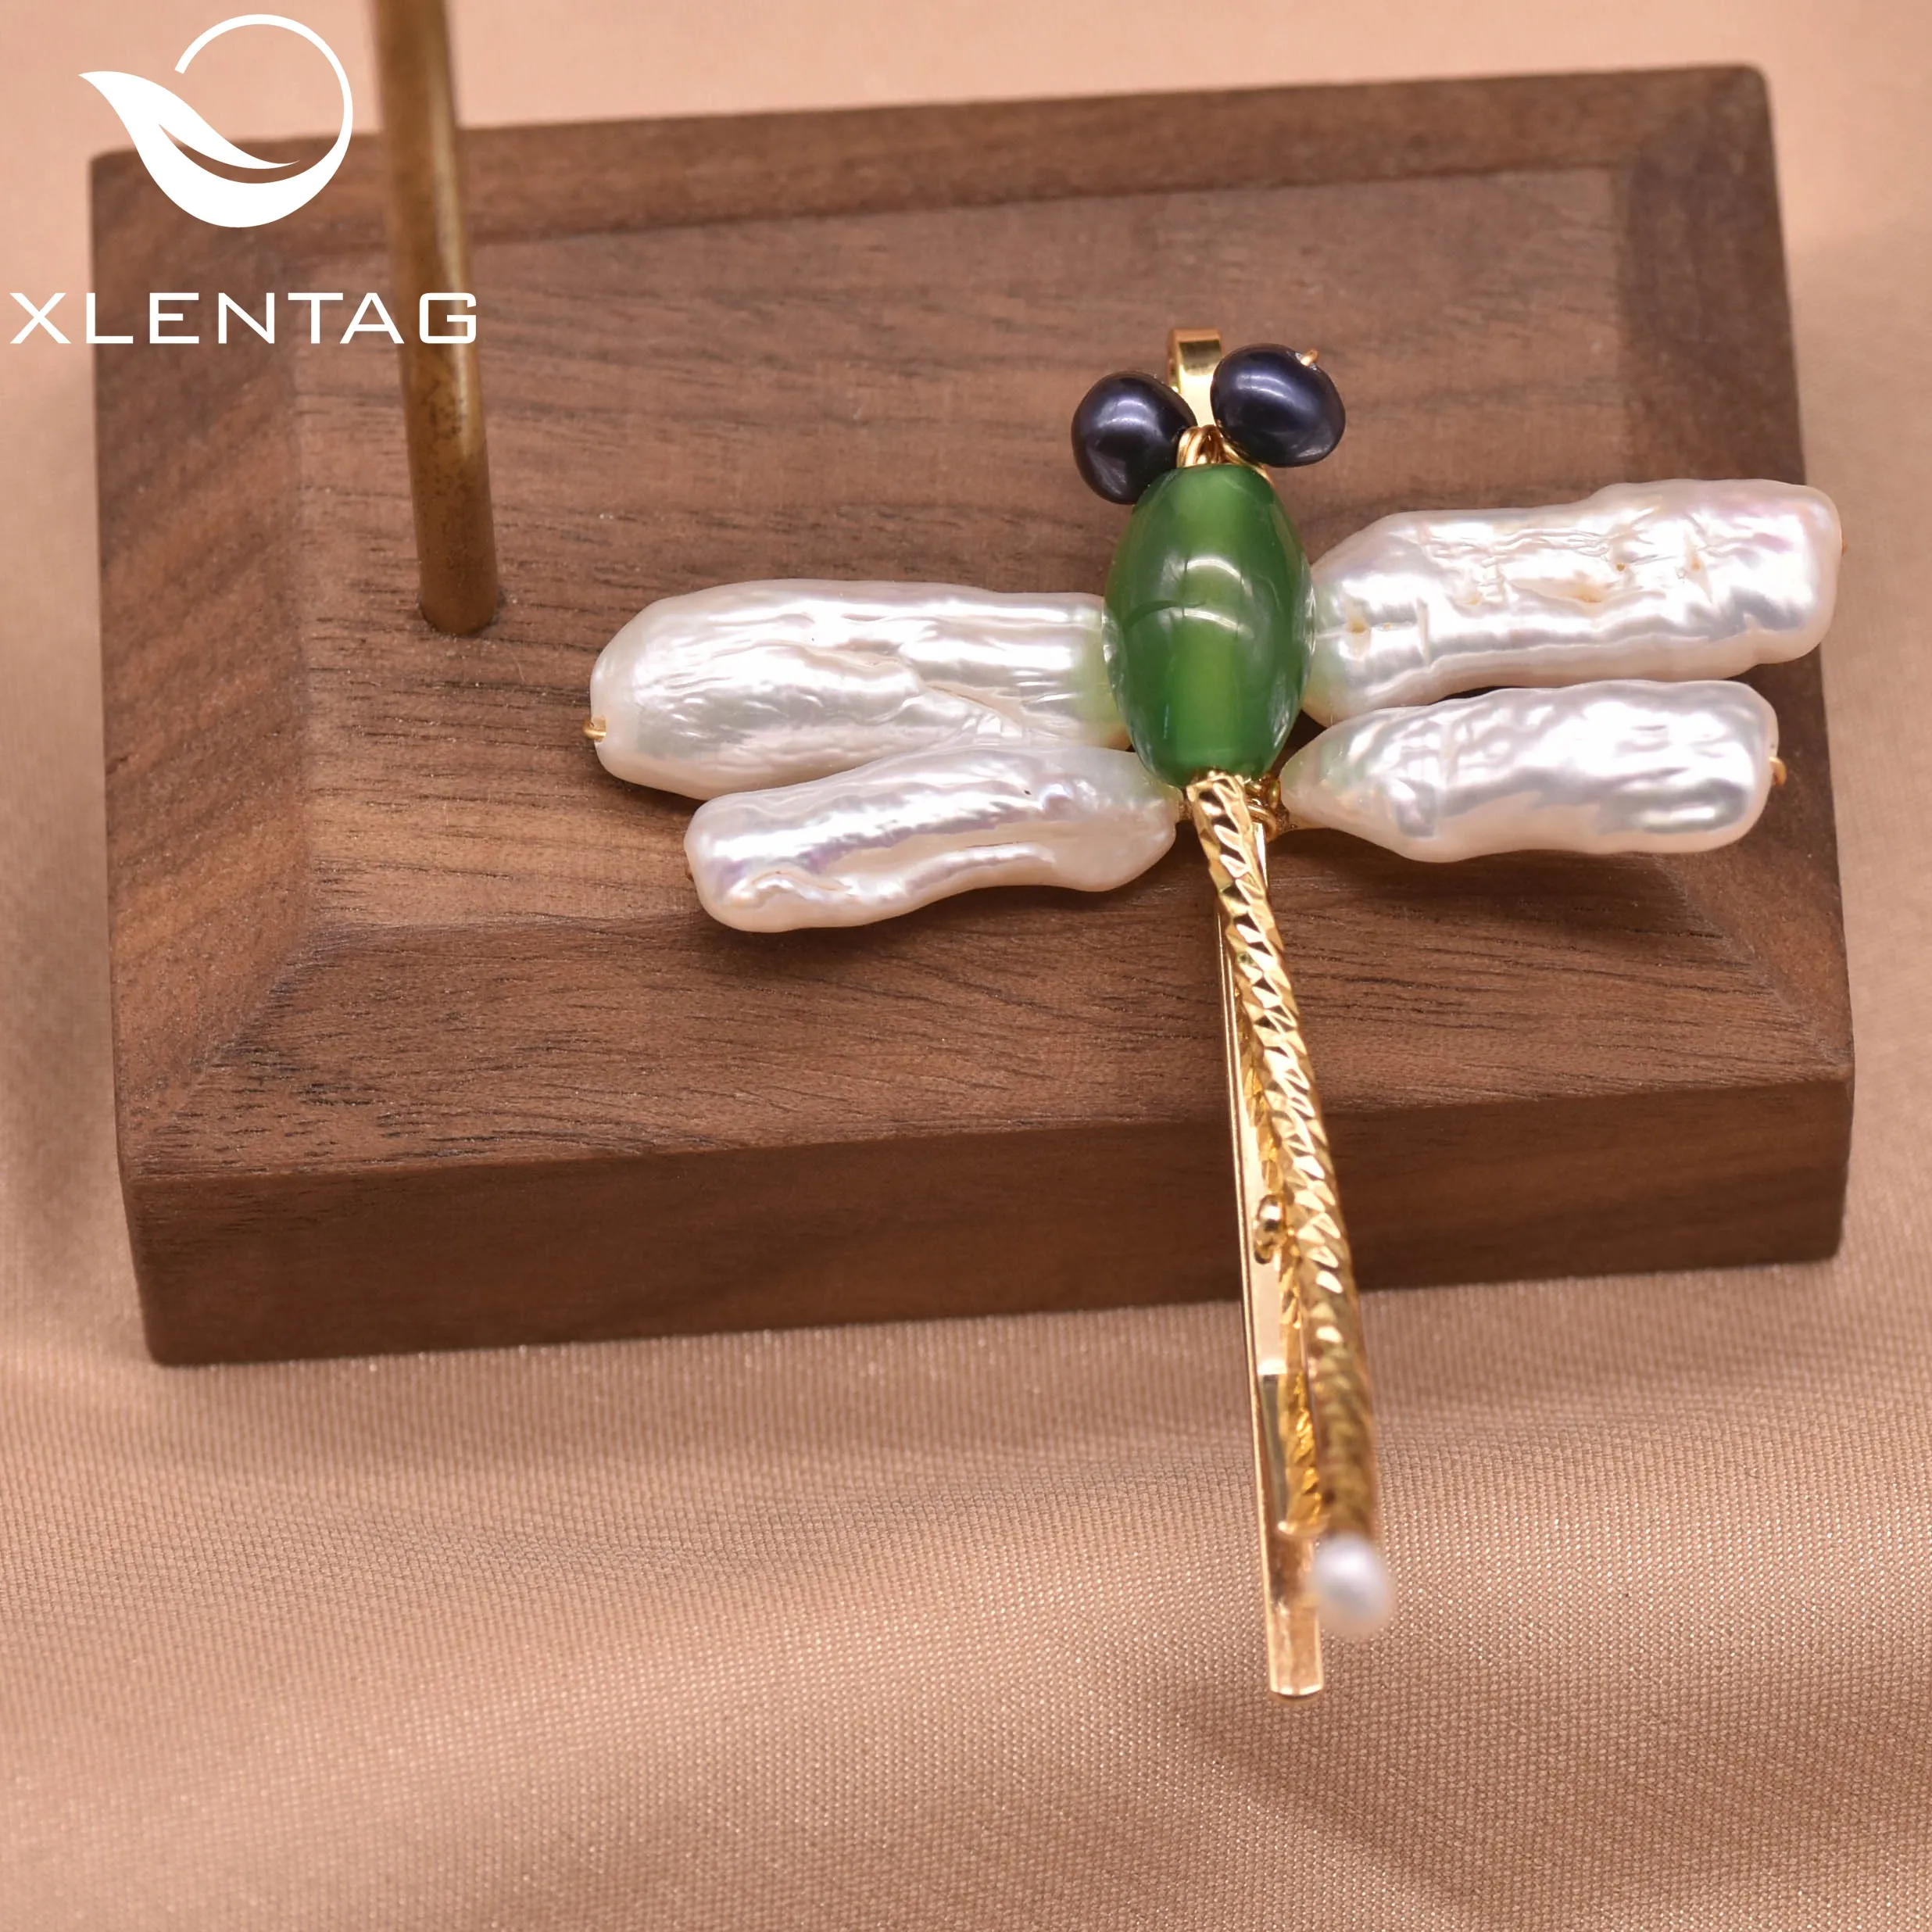 Acessórios de cabelo em forma de dragonfly, acessórios de cabelo puros, de pérola, verde e jade, personalizado, único, presentes, joias